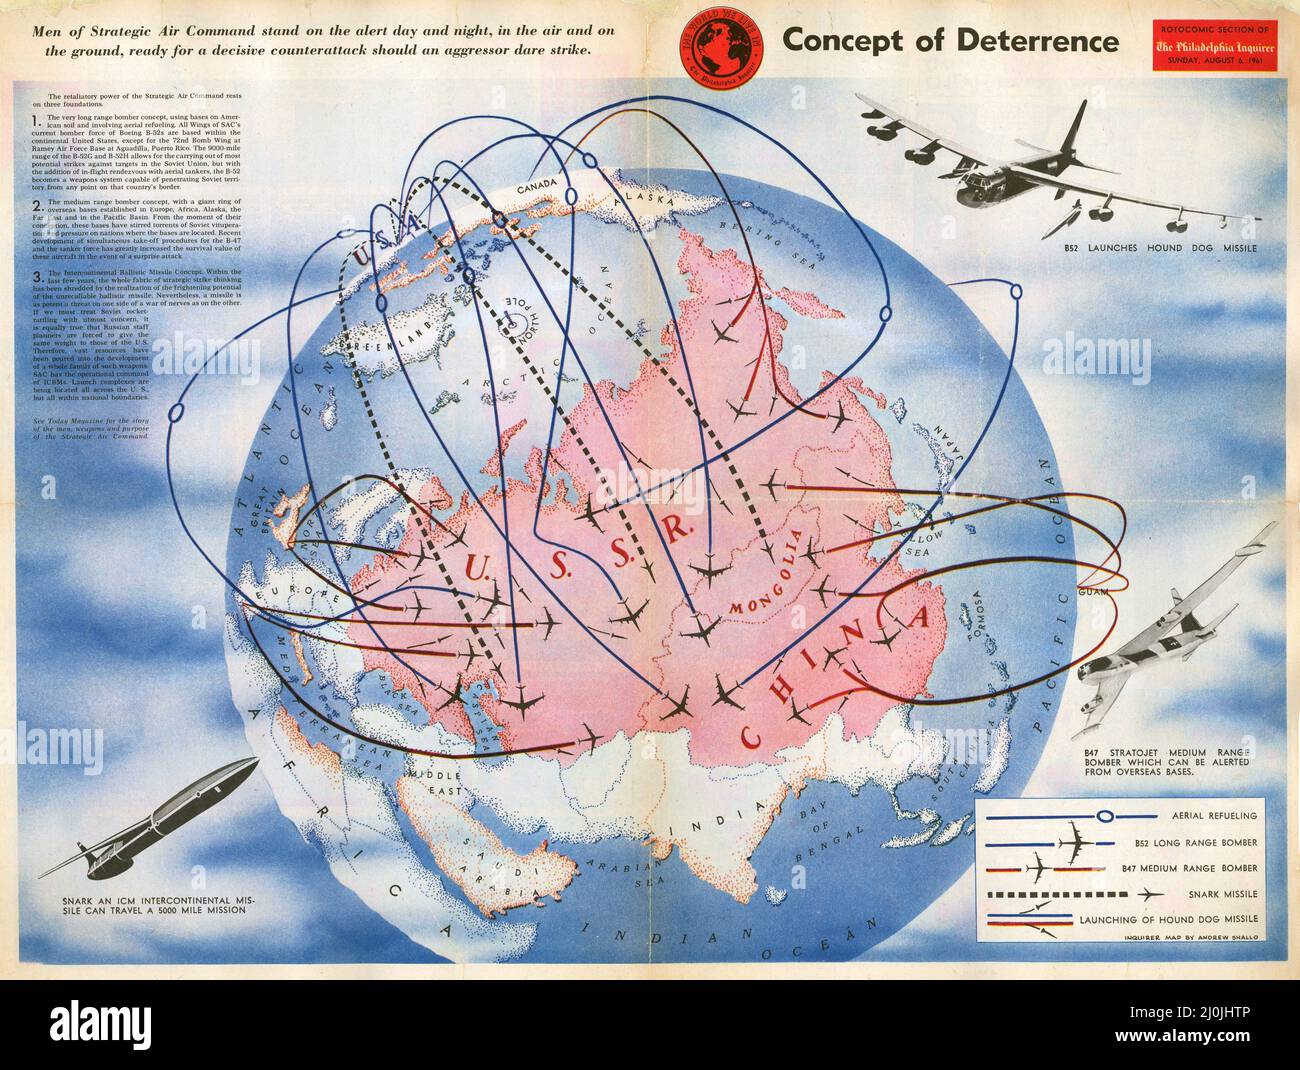 1961 carta propagandistica dell'Unione anti-sovietica - concetto di deterrenza - uomini del comando aereo strategico su giorno e notte allerta. Foto Stock